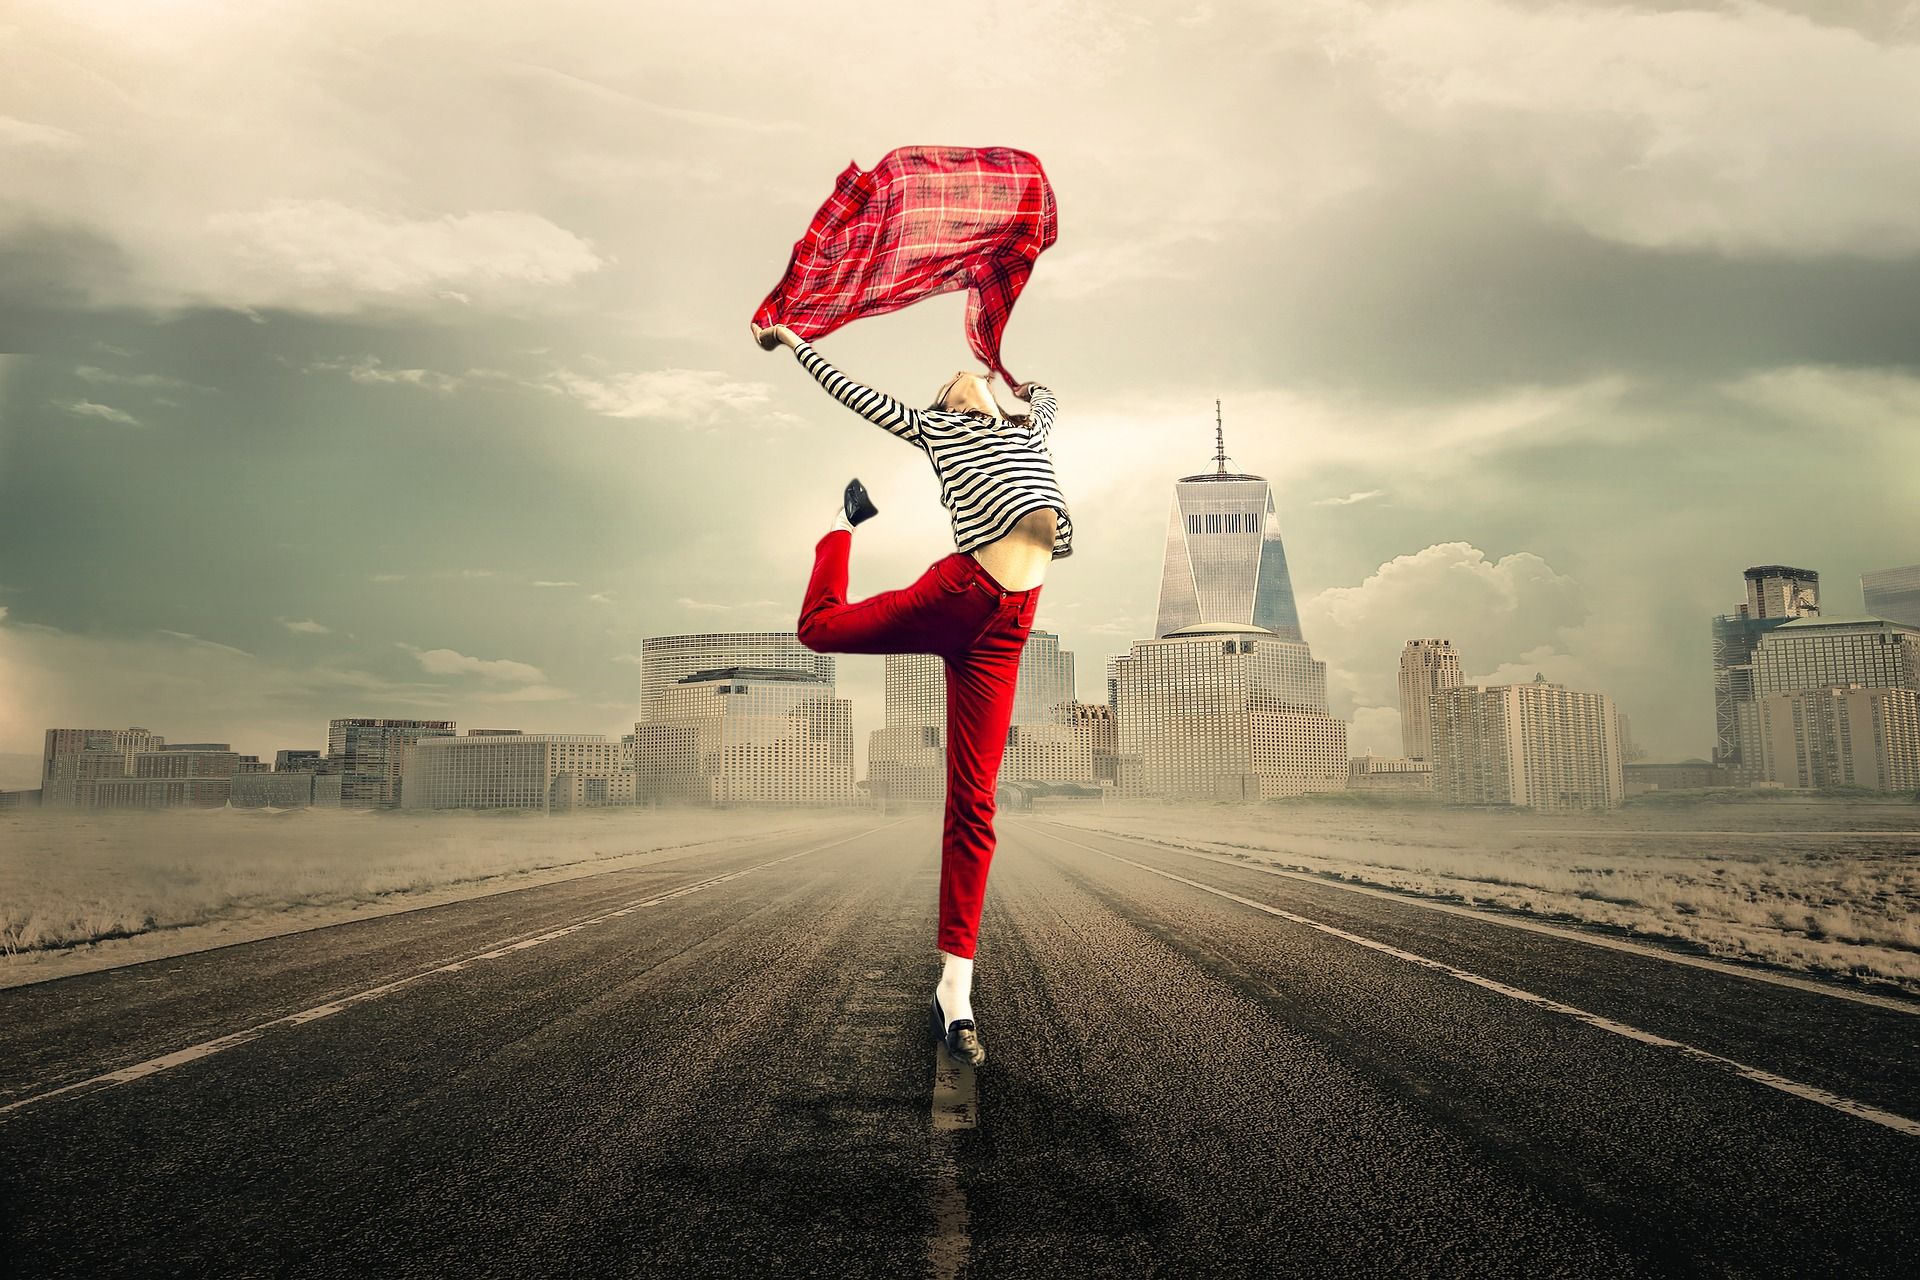 Une femme dansant avec un foulard sur un fond d'immeubles au loin - Image par Myriams-Fotos de https://pixabay.com/fr/photos/libert%C3%A9-femme-route-ville-content-2940655/